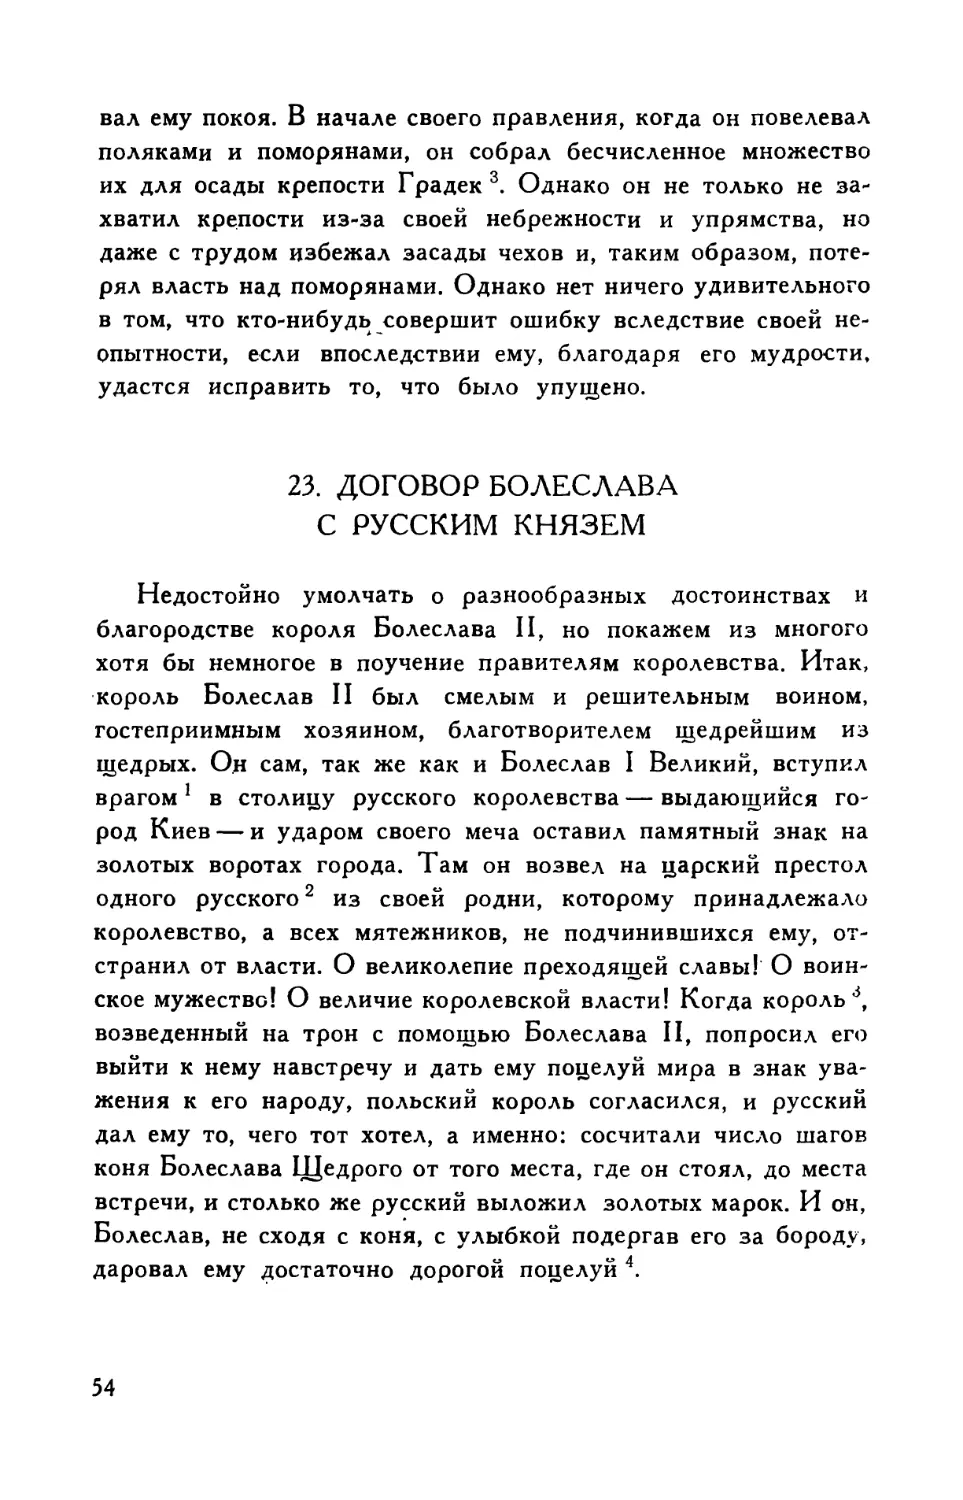 23. Договор Болеслава с русским  князем